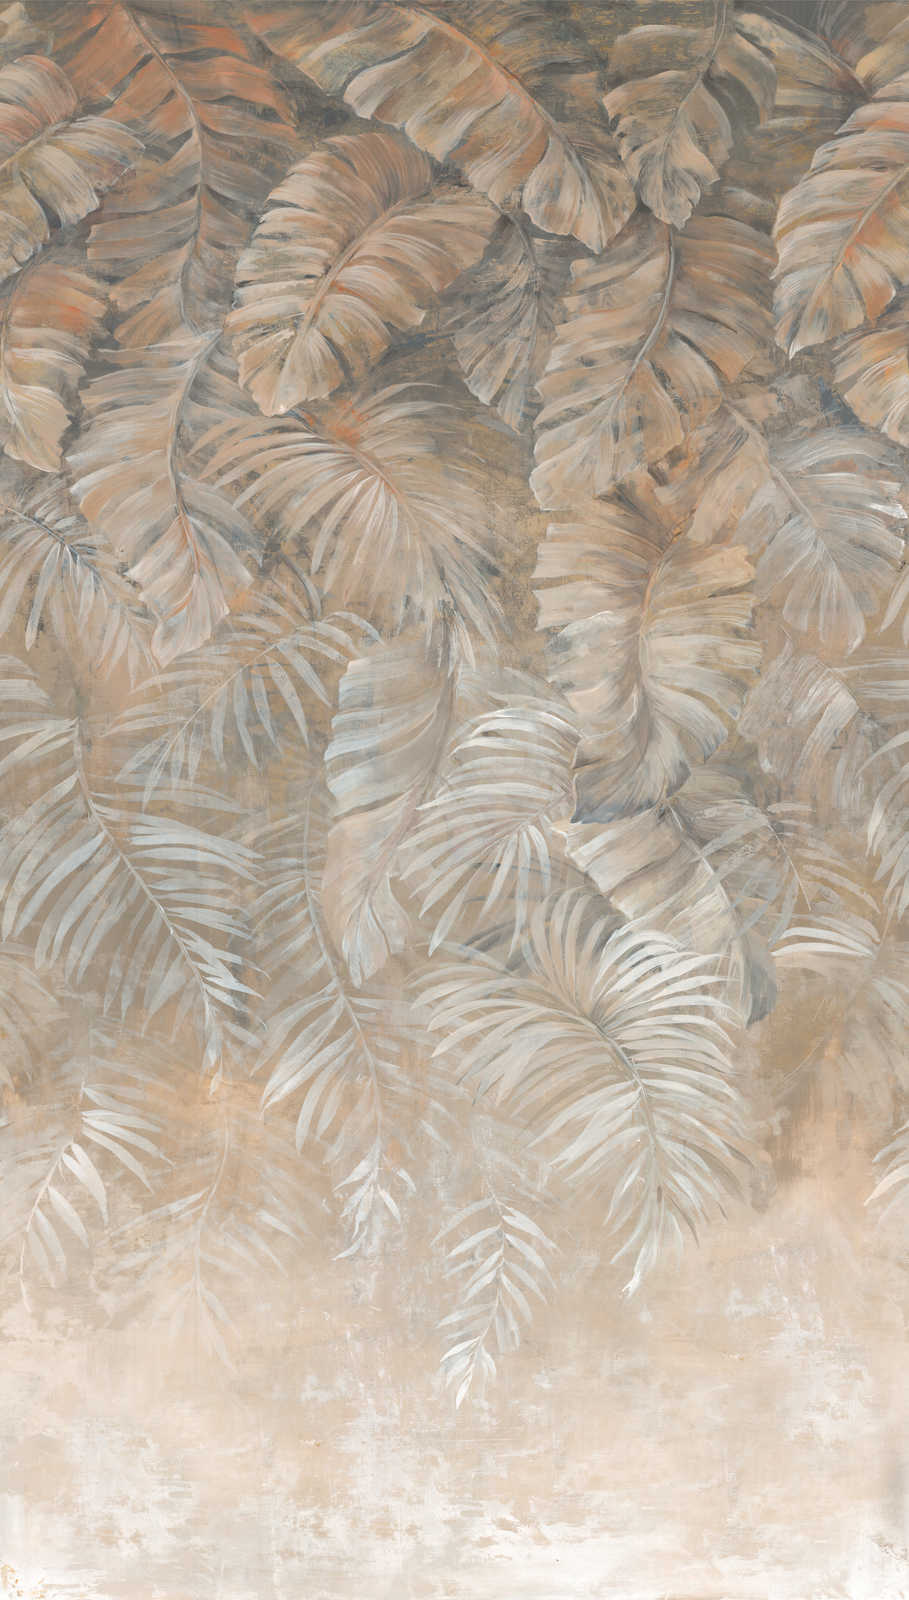             Große Palmenblätter Tapete in dezenten Erdtönen – Braun, Beige, Creme
        